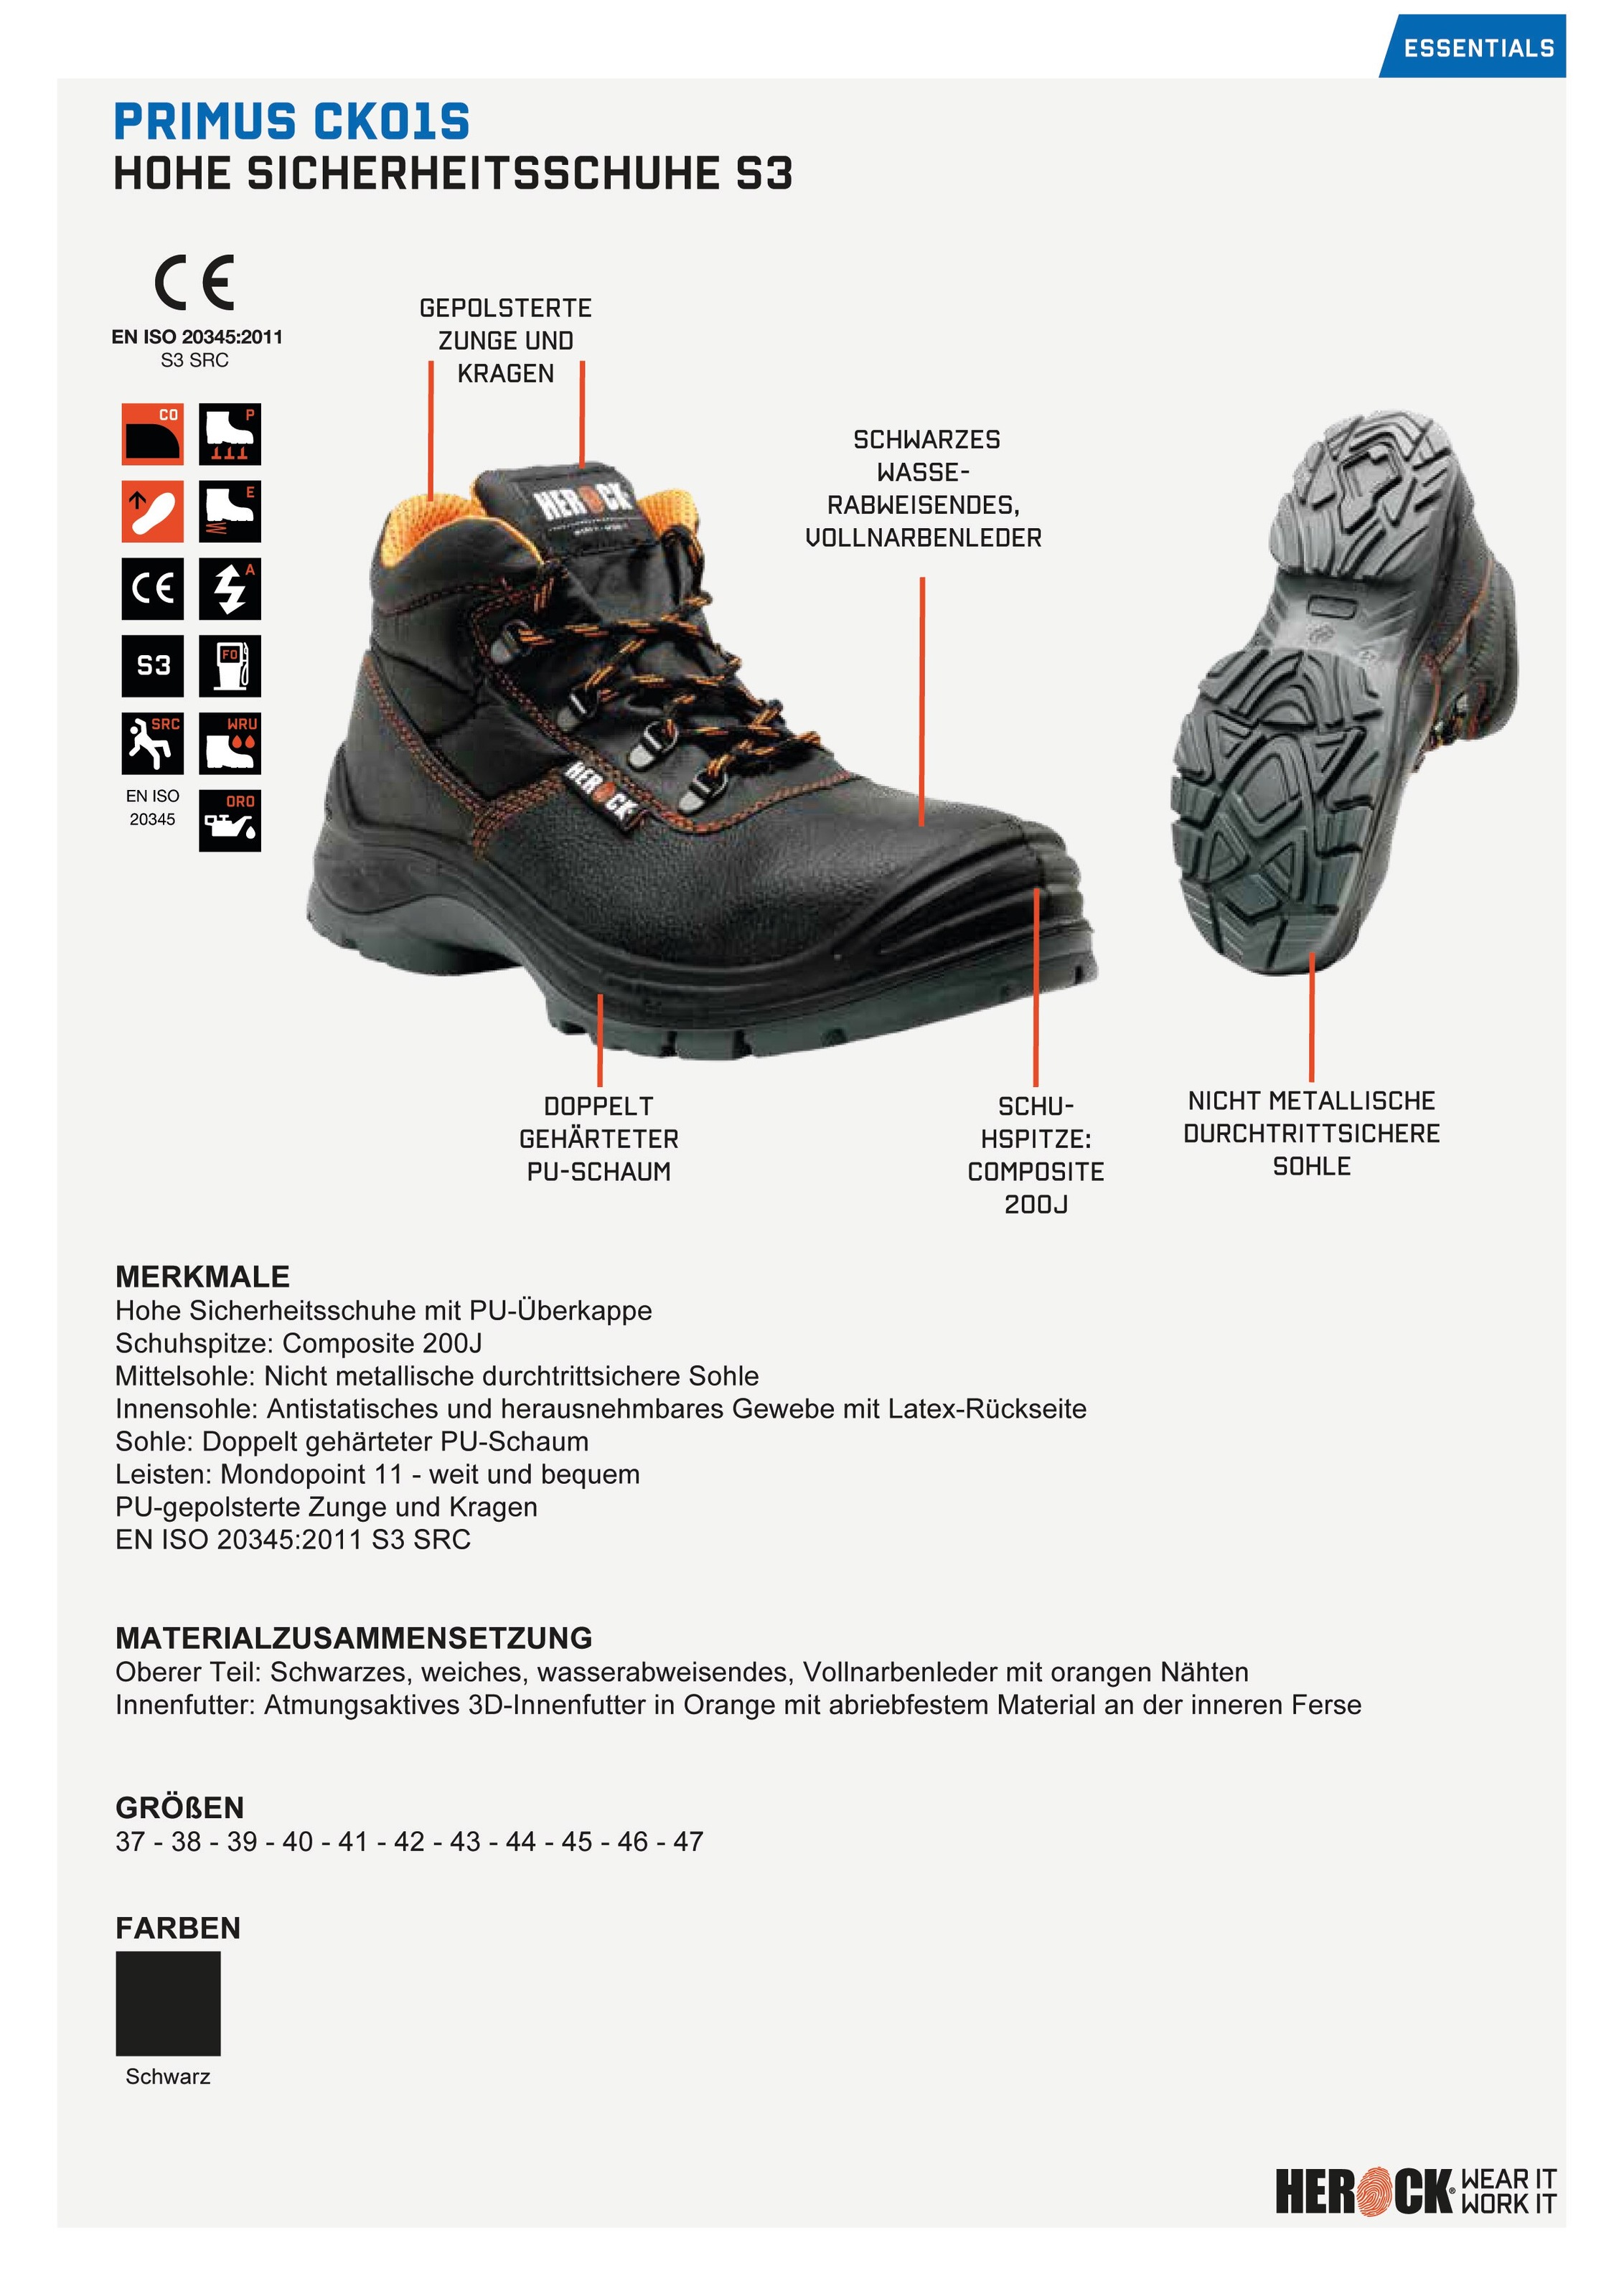 Herock Sicherheitsschuh »Primus High Compo S3 bestellen Klasse Schuhe«, bequem, leicht, S3, durchtrittsicher PU- BAUR und Überkappe, weit 